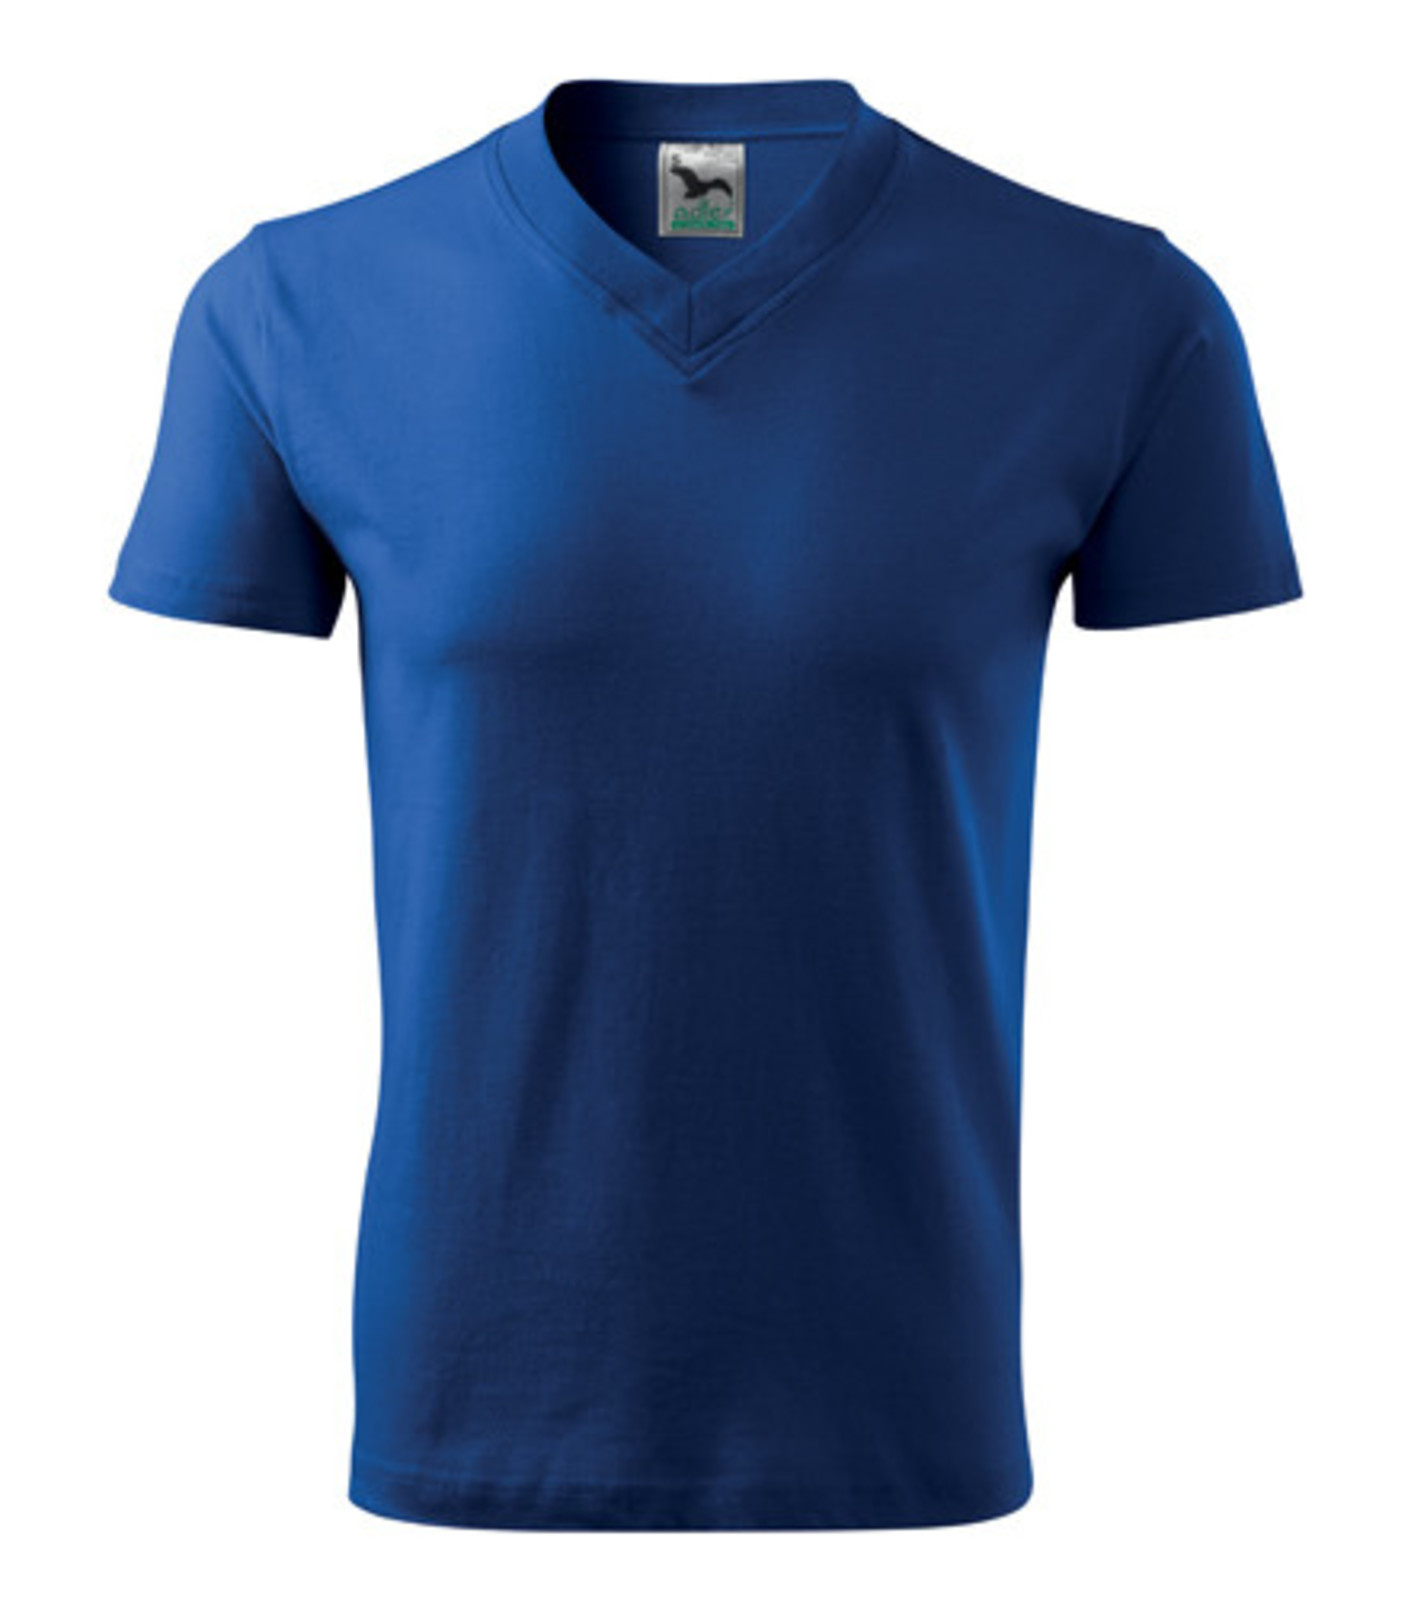 Unisex tričko s výstrihom Adler V-Neck 102 - veľkosť: L, farba: kráľovská modrá